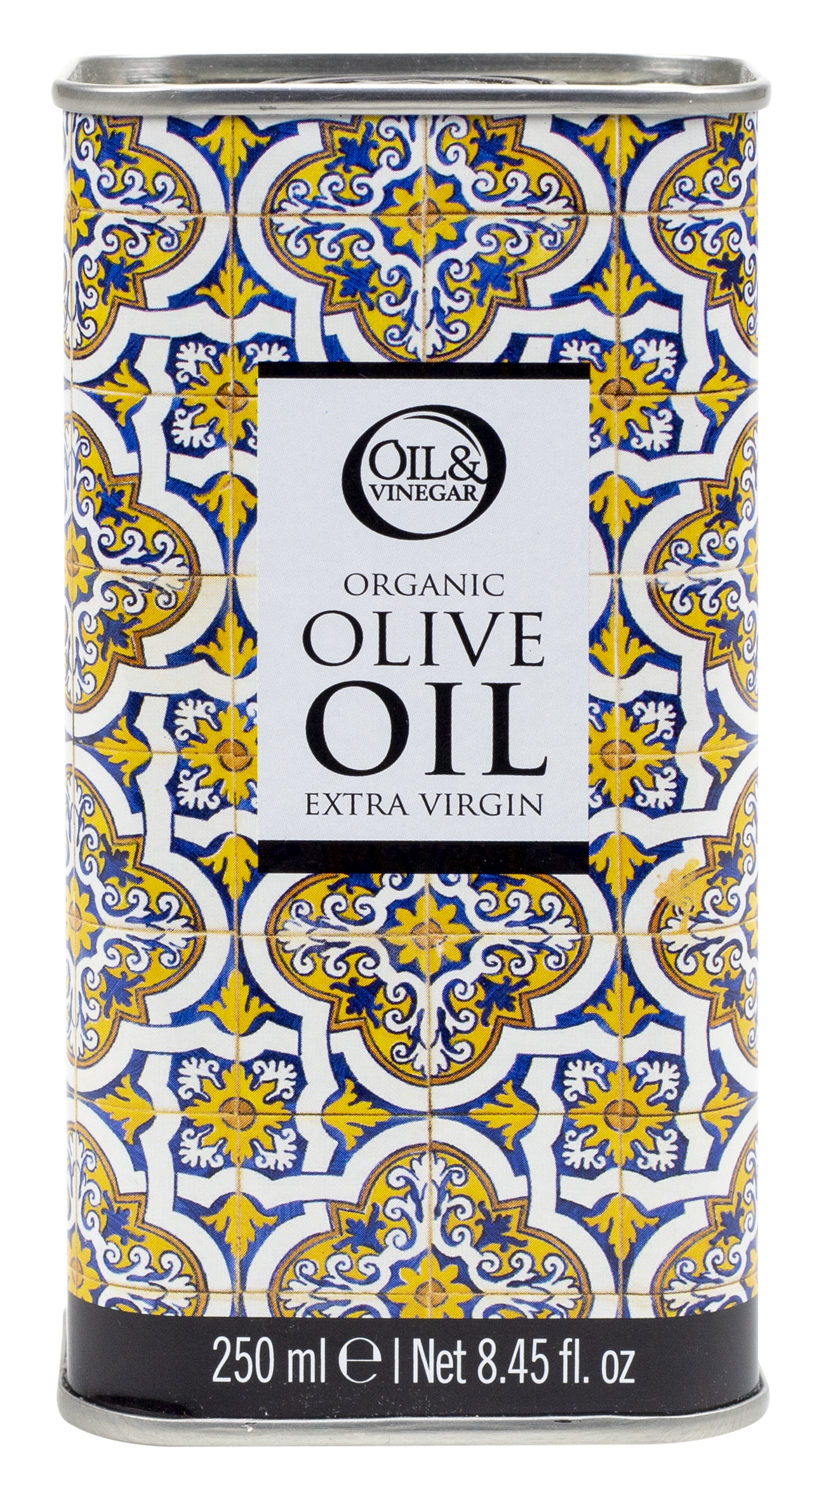 Huile d'olive extra vierge biologique en boîte design jaune (250ml) - €9.95